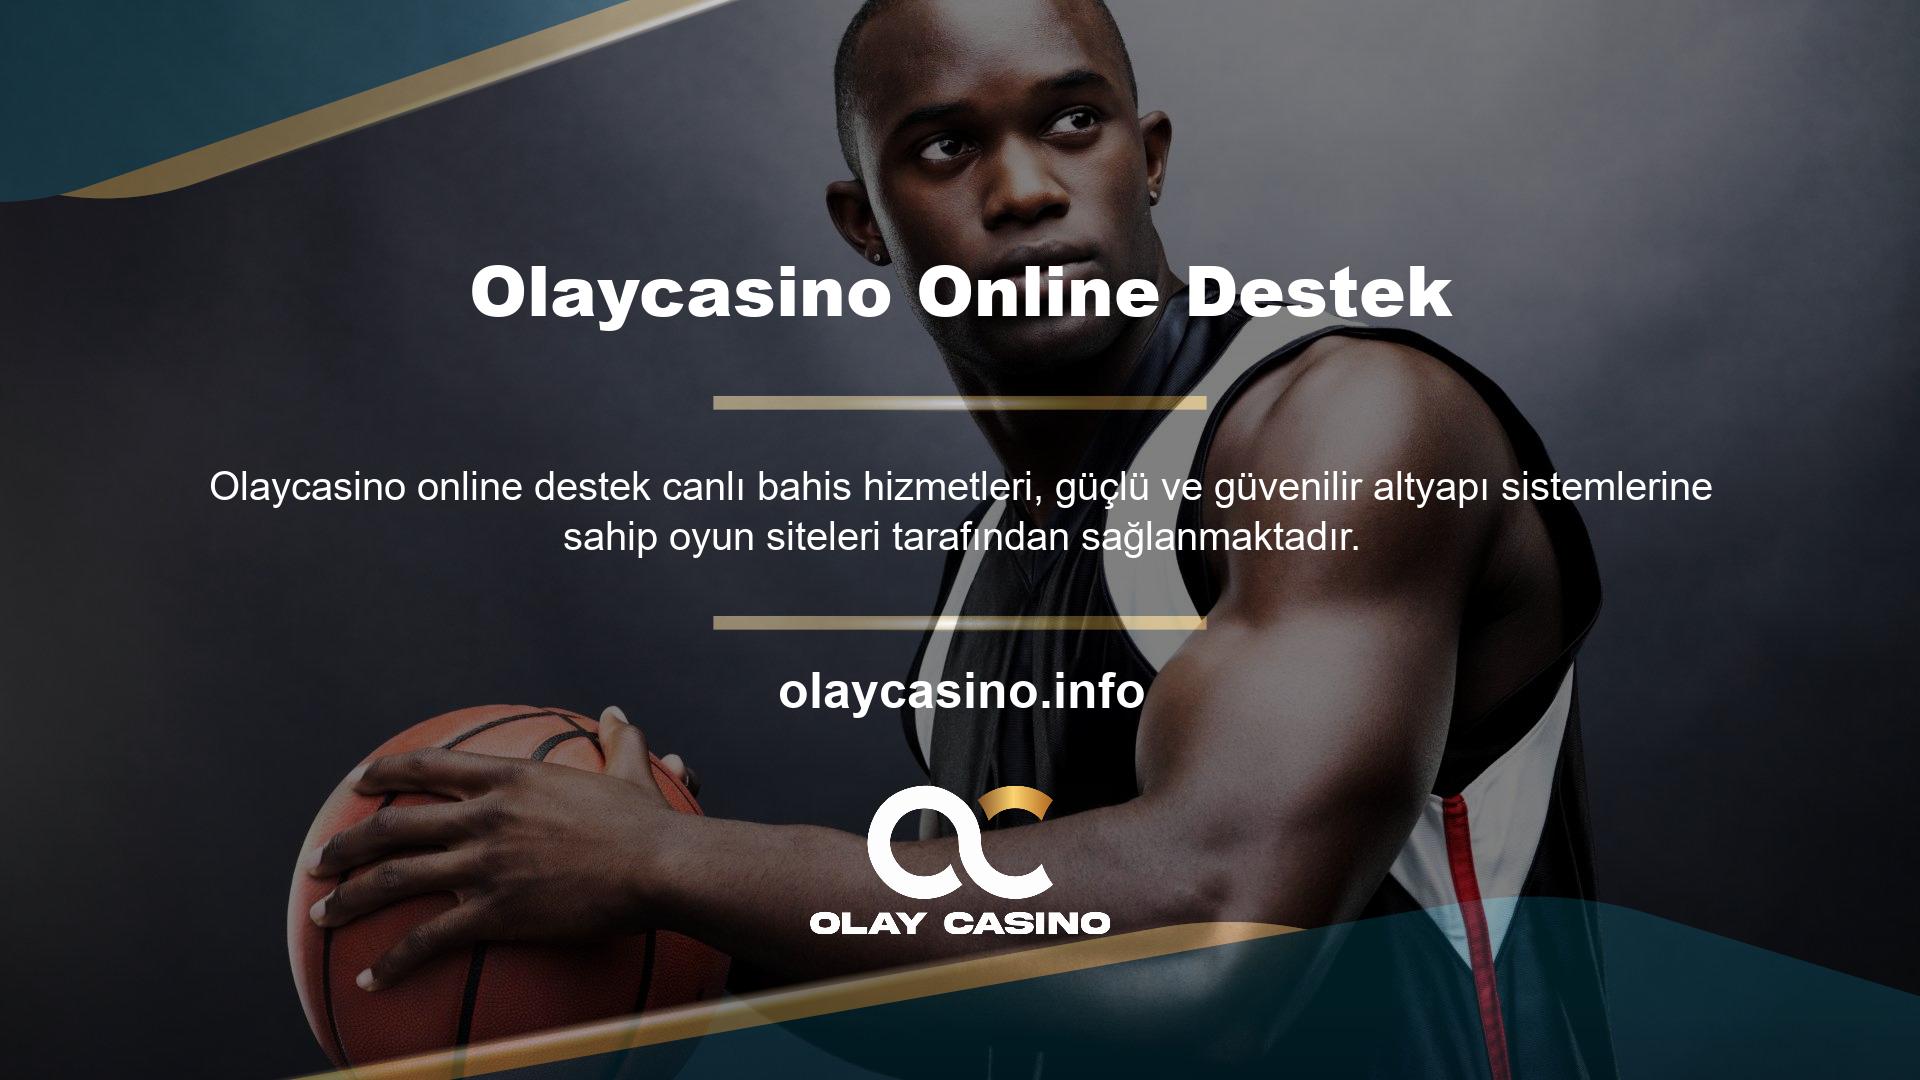 Canlı casino web sitesi arayan bir casino tutkunuysanız, bu web sitesinin sağladığı destek hizmetlerini göz önünde bulundurun